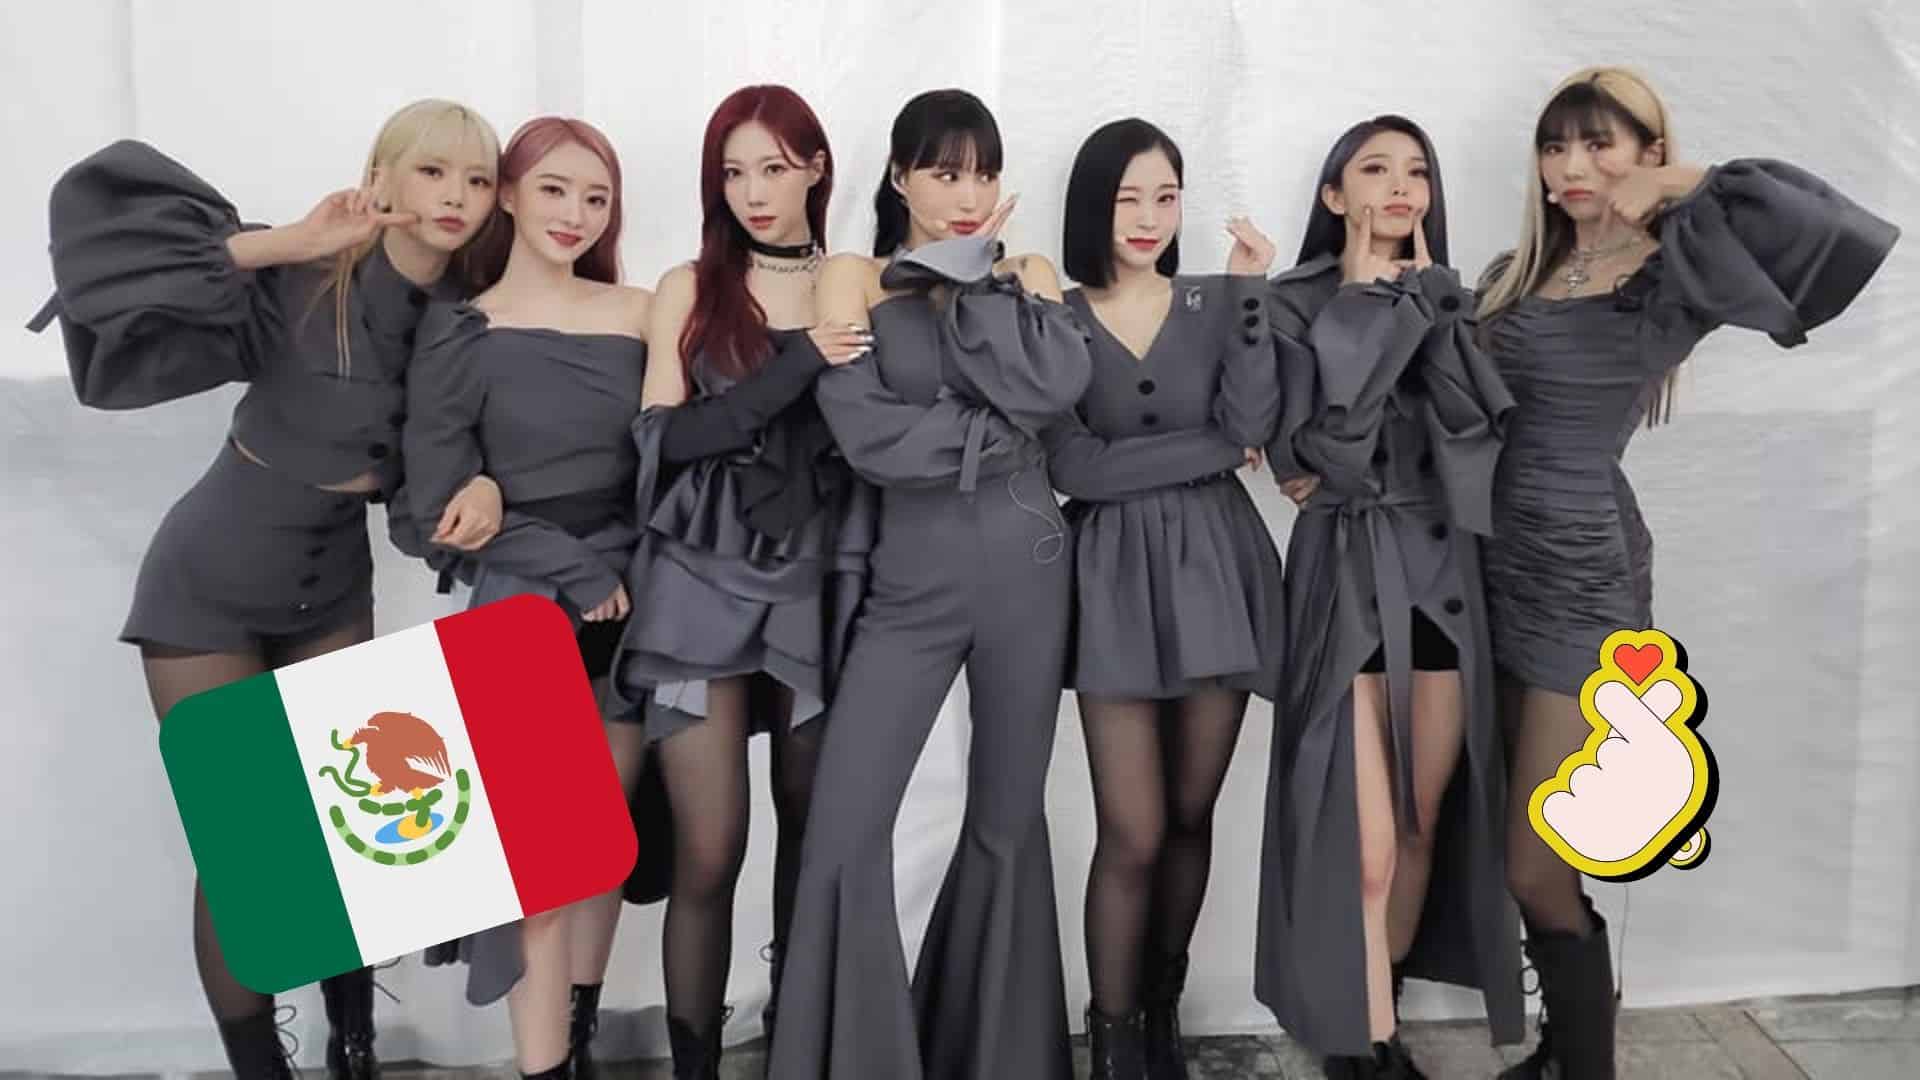 ¡Dreamcatcher confirma concierto en México! Te damos 5 razones para no perdértelas